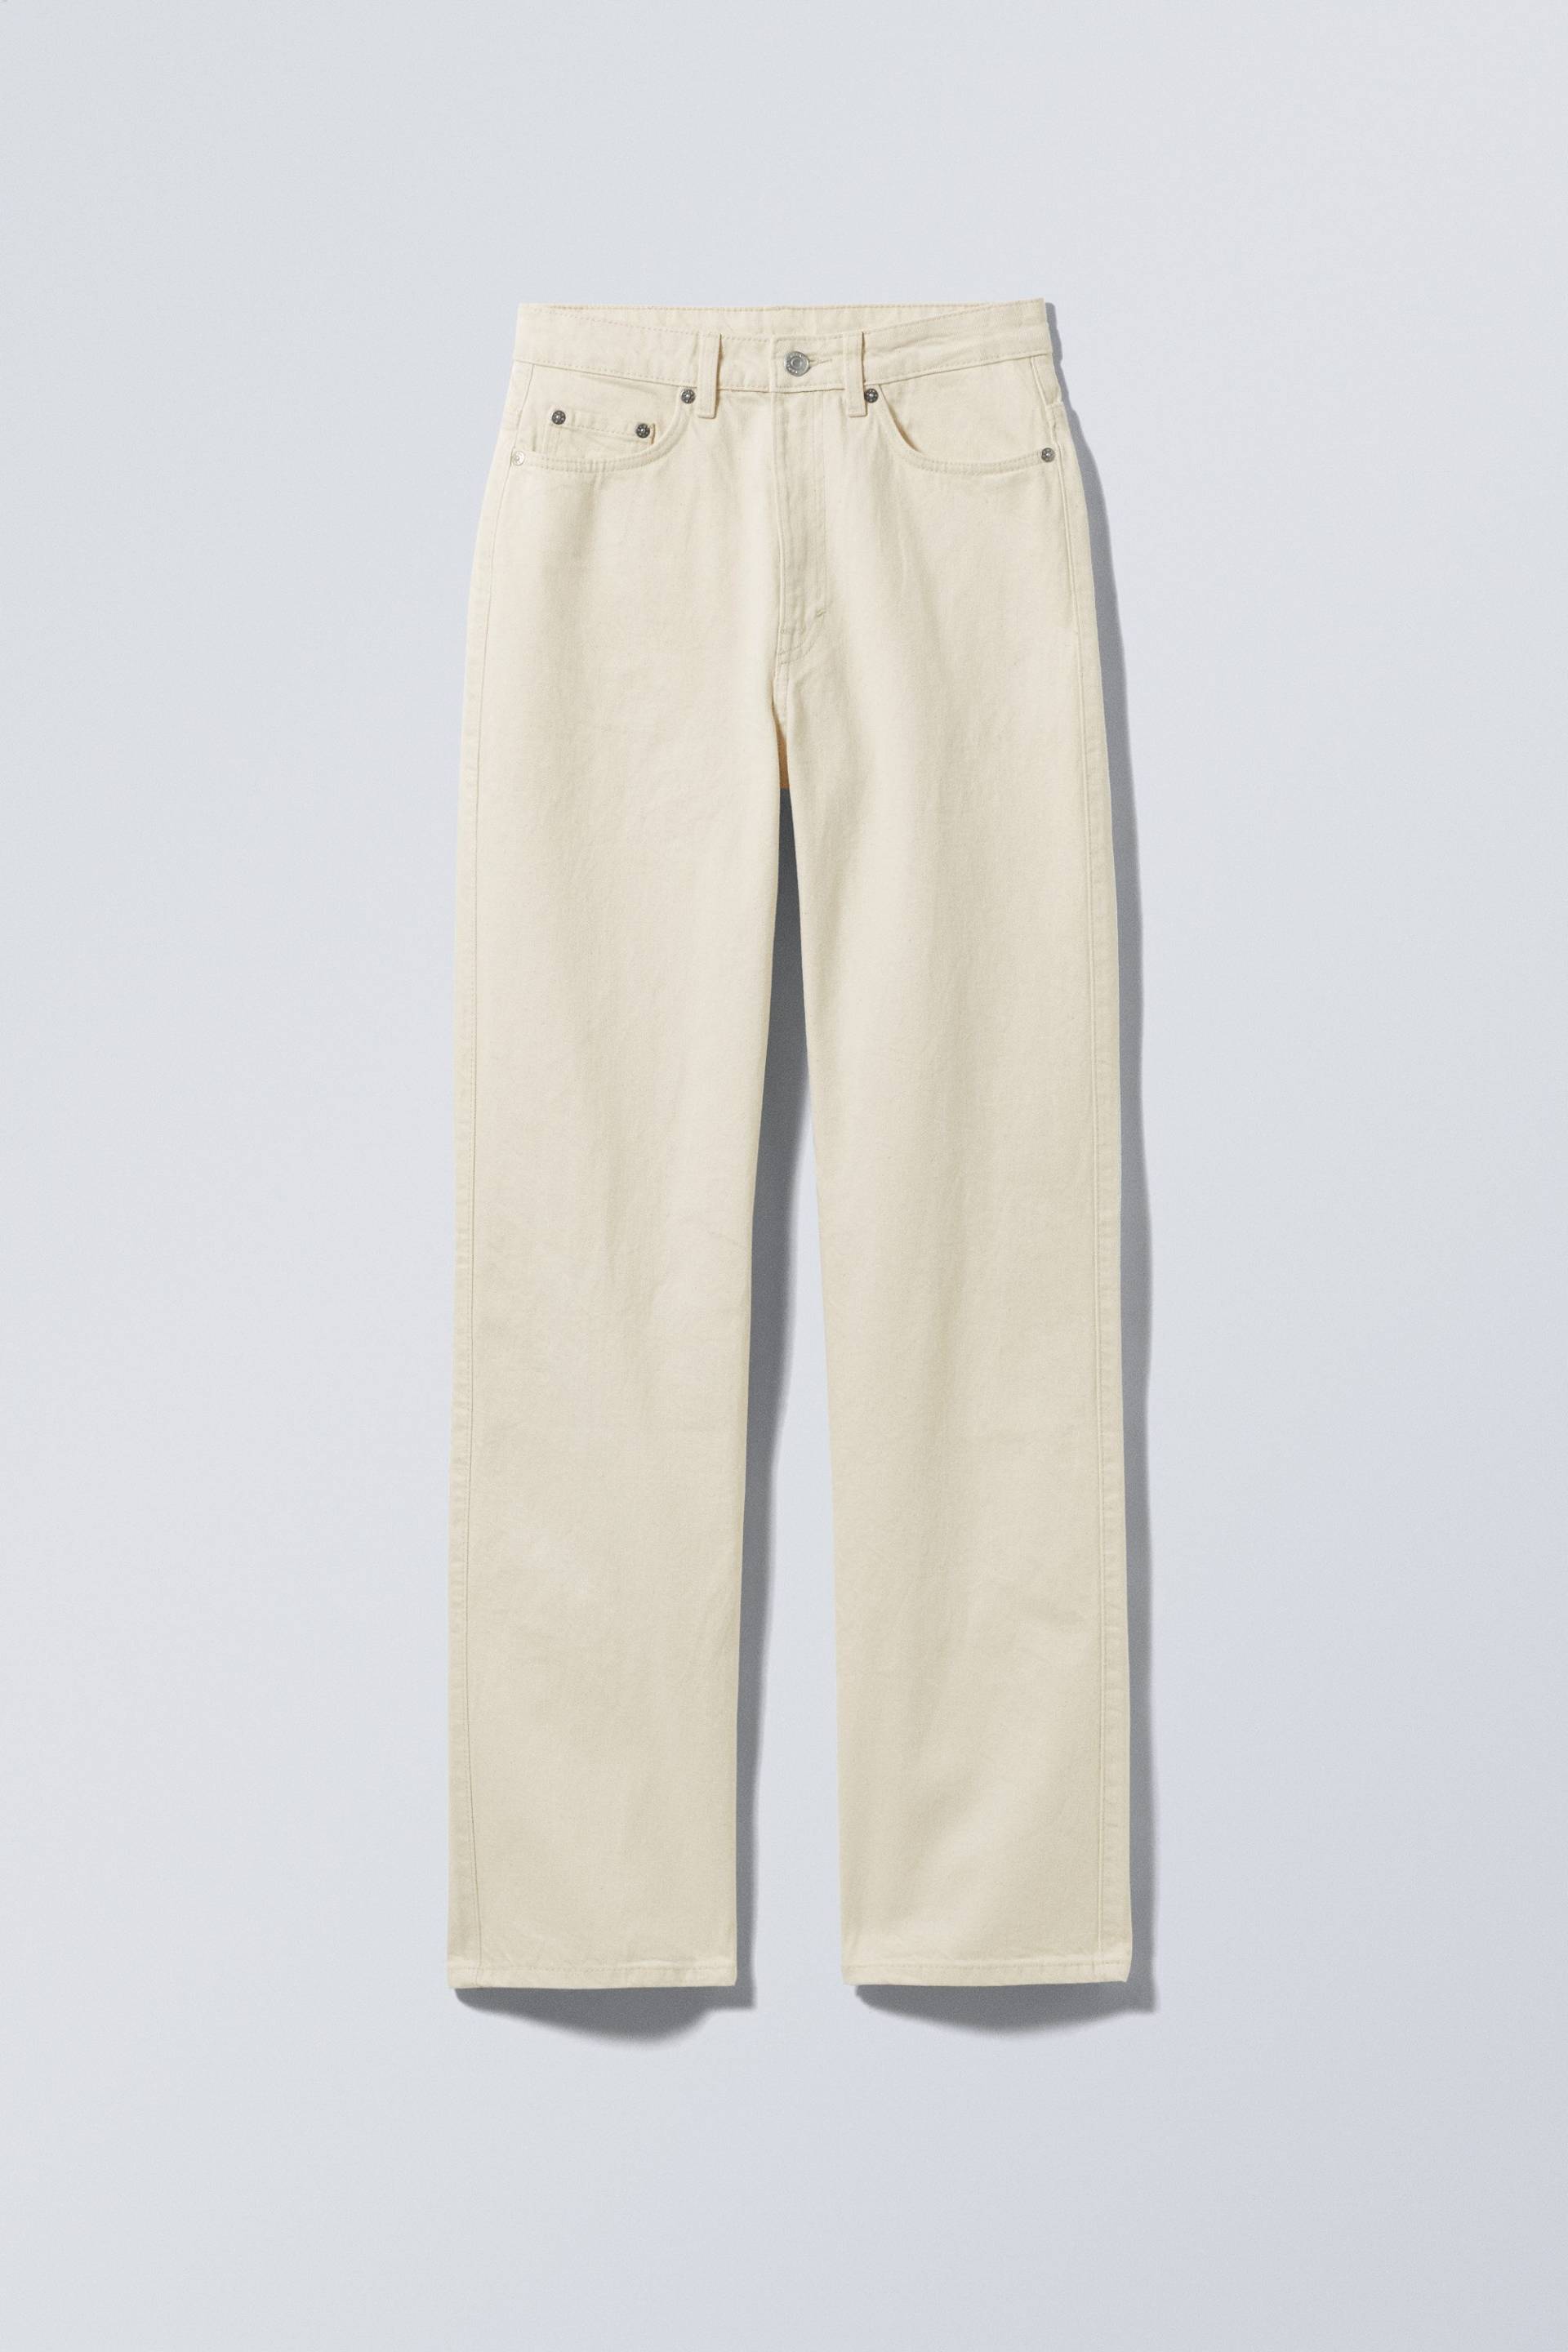 Weekday Jeans Rowe mit extrahohem Bund Helles, gedecktes Beige, Straight in Größe 24/32. Farbe: Beige dusty light von Weekday